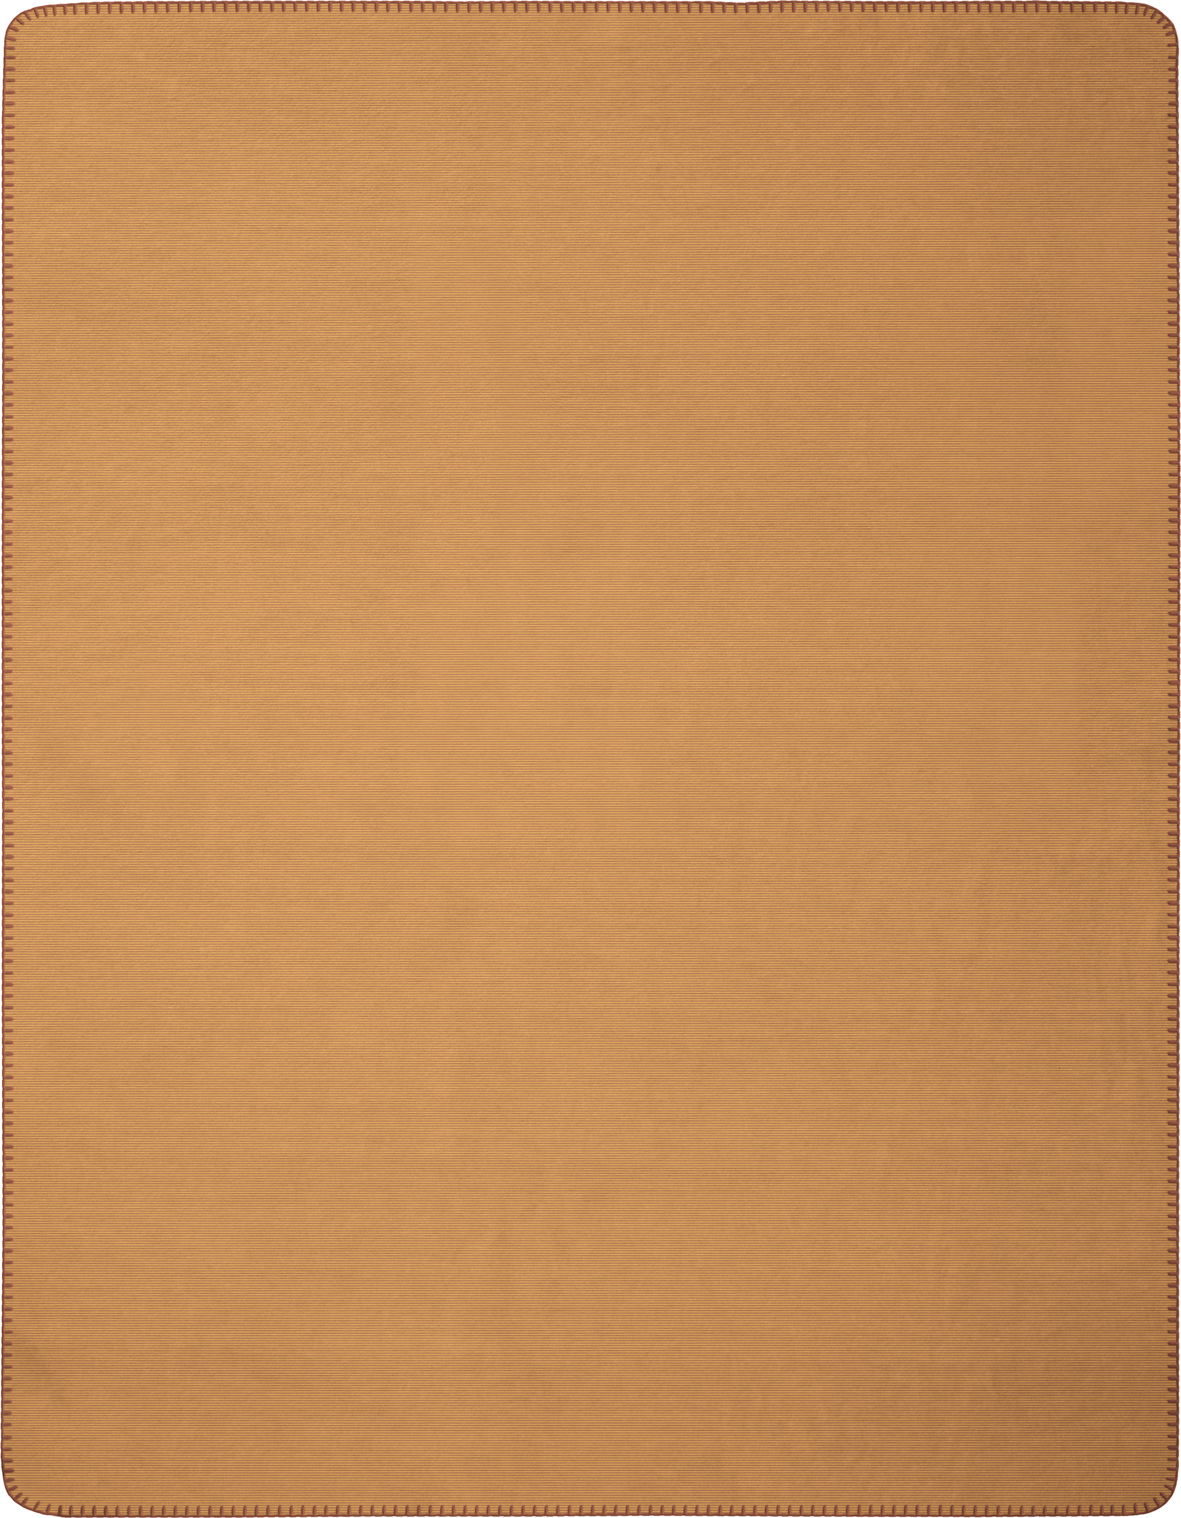 Wohndecke "Melange Doubleface" aus Baumwollmischgewebe in 150x200 cm in Ocker-Beige - Vorderseite